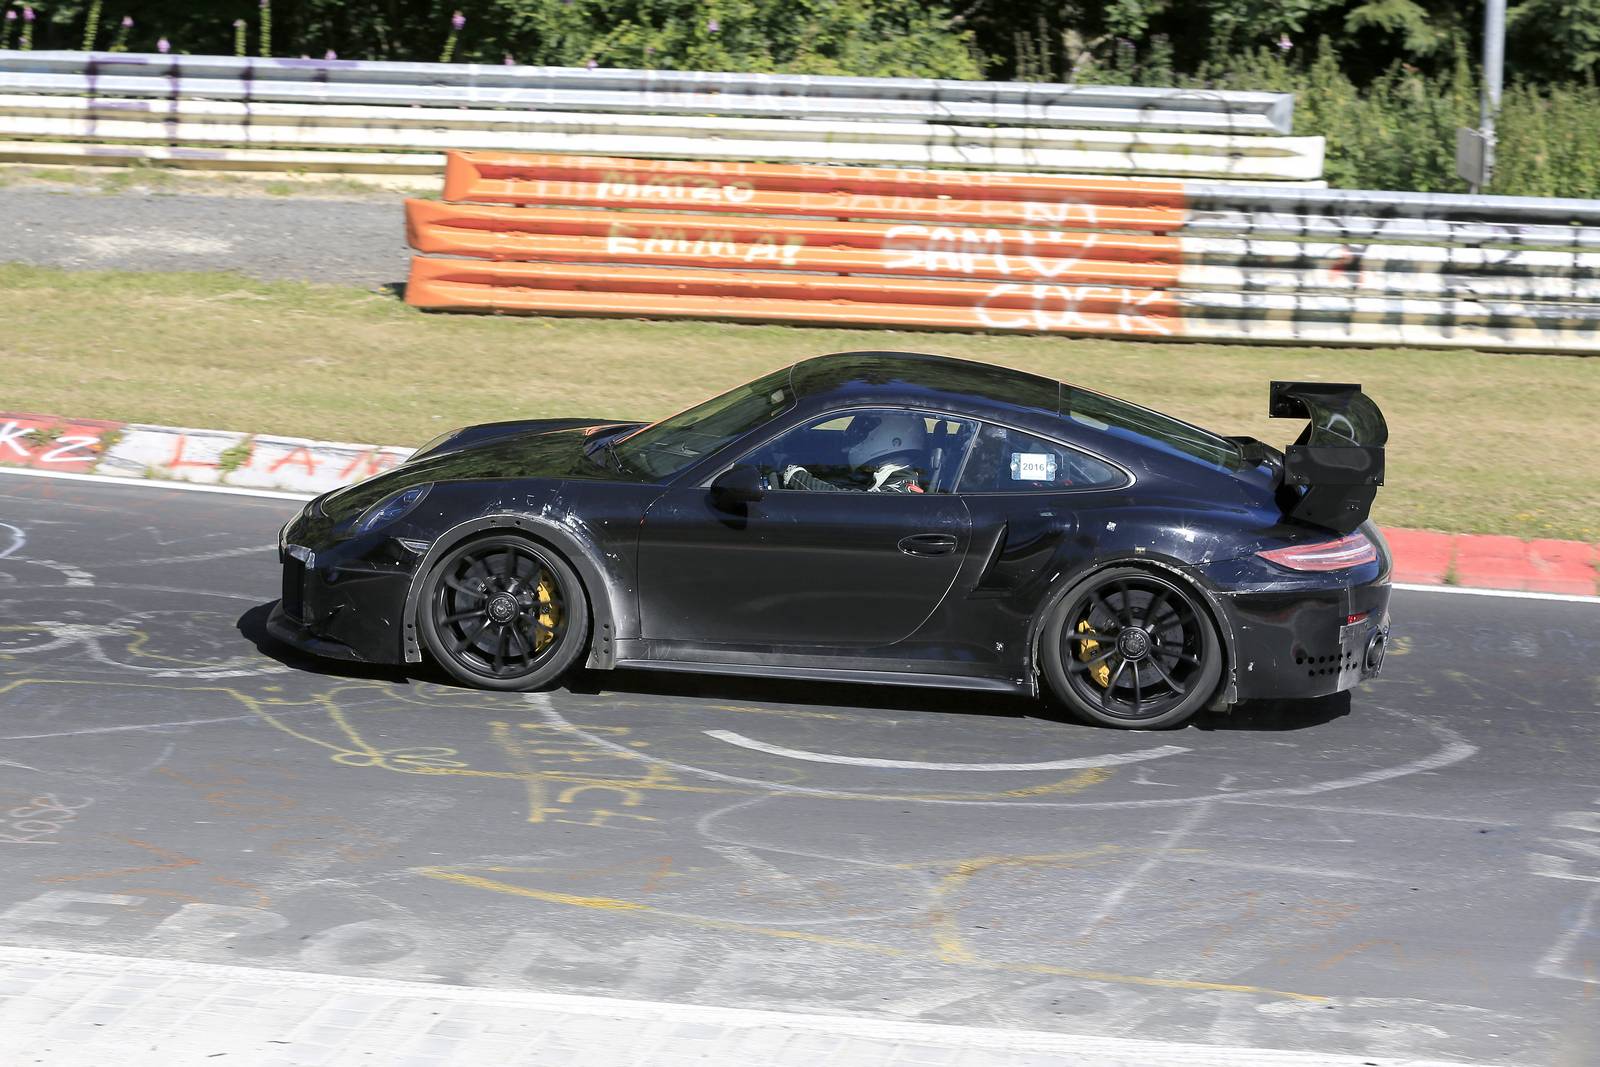 Долгожданный 2017 Porsche 911 GT2 был замечен на тестировании на Нюрбургринге перед его дебютом на Парижском автосалоне 2016 в октябре. Глядя на этот автомобиль, мы можем с уверенностью сказать, что GT2 991 поколения будет отличаться большим задним а